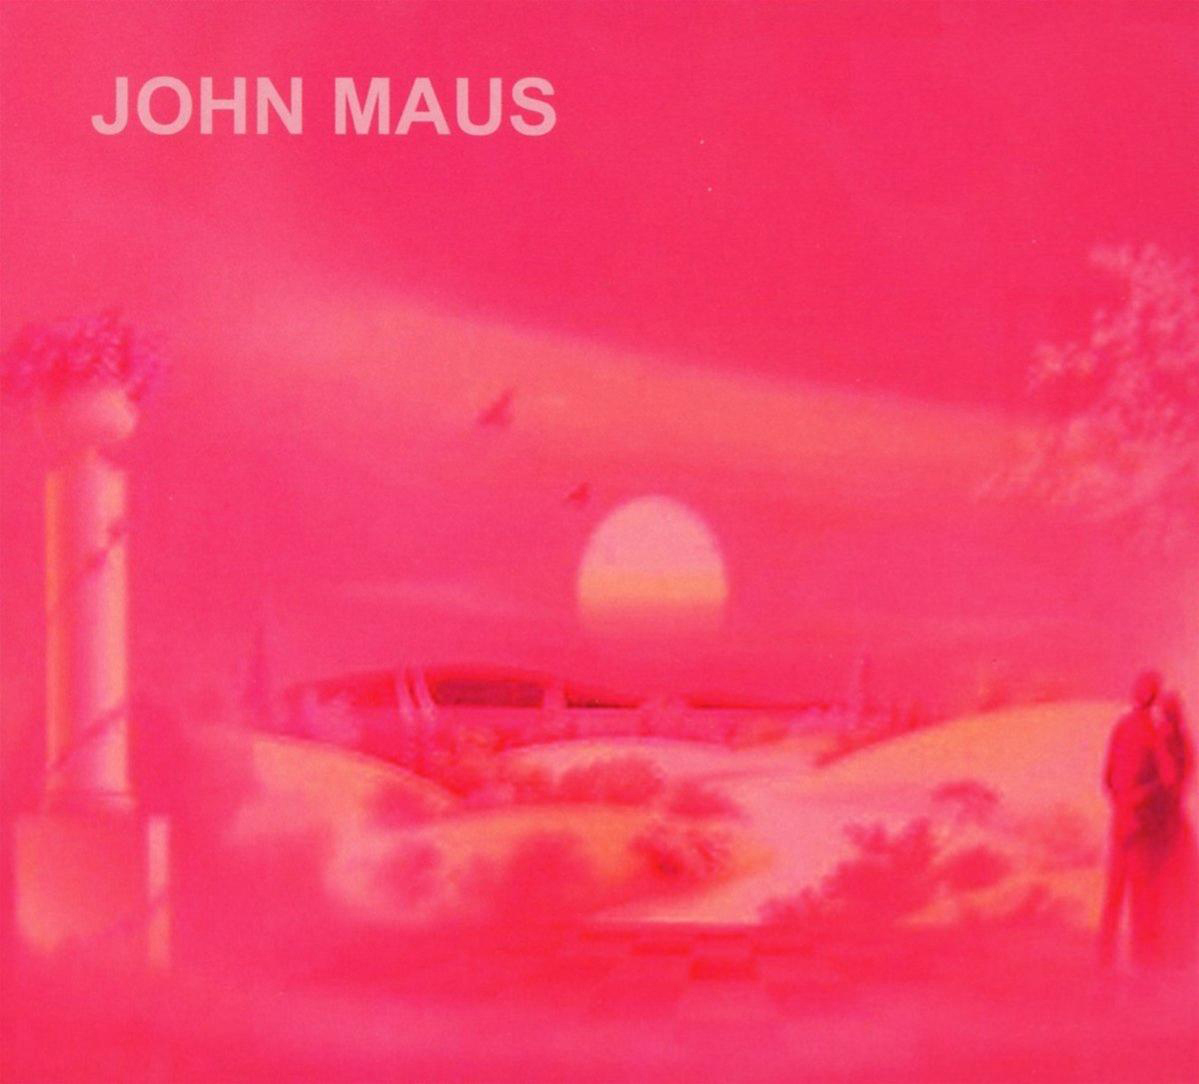 Maus John - Songs (CD) (Digipack) -